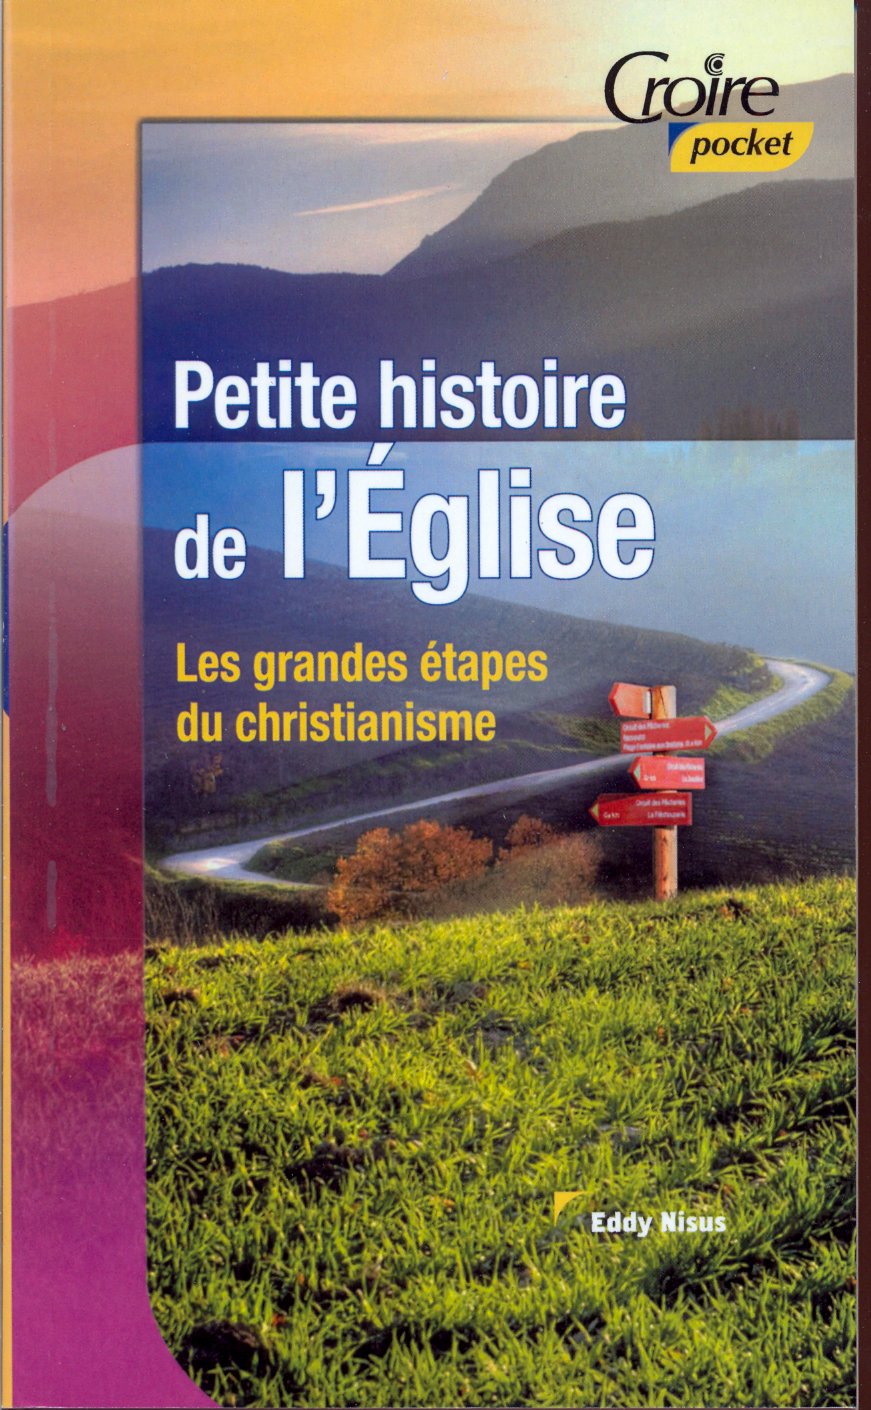 PETITE HISTOIRE DE L'EGLISE No 22 - LES GRANDES ETAPES DU CHRISTIANISME, CROIRE POCKET